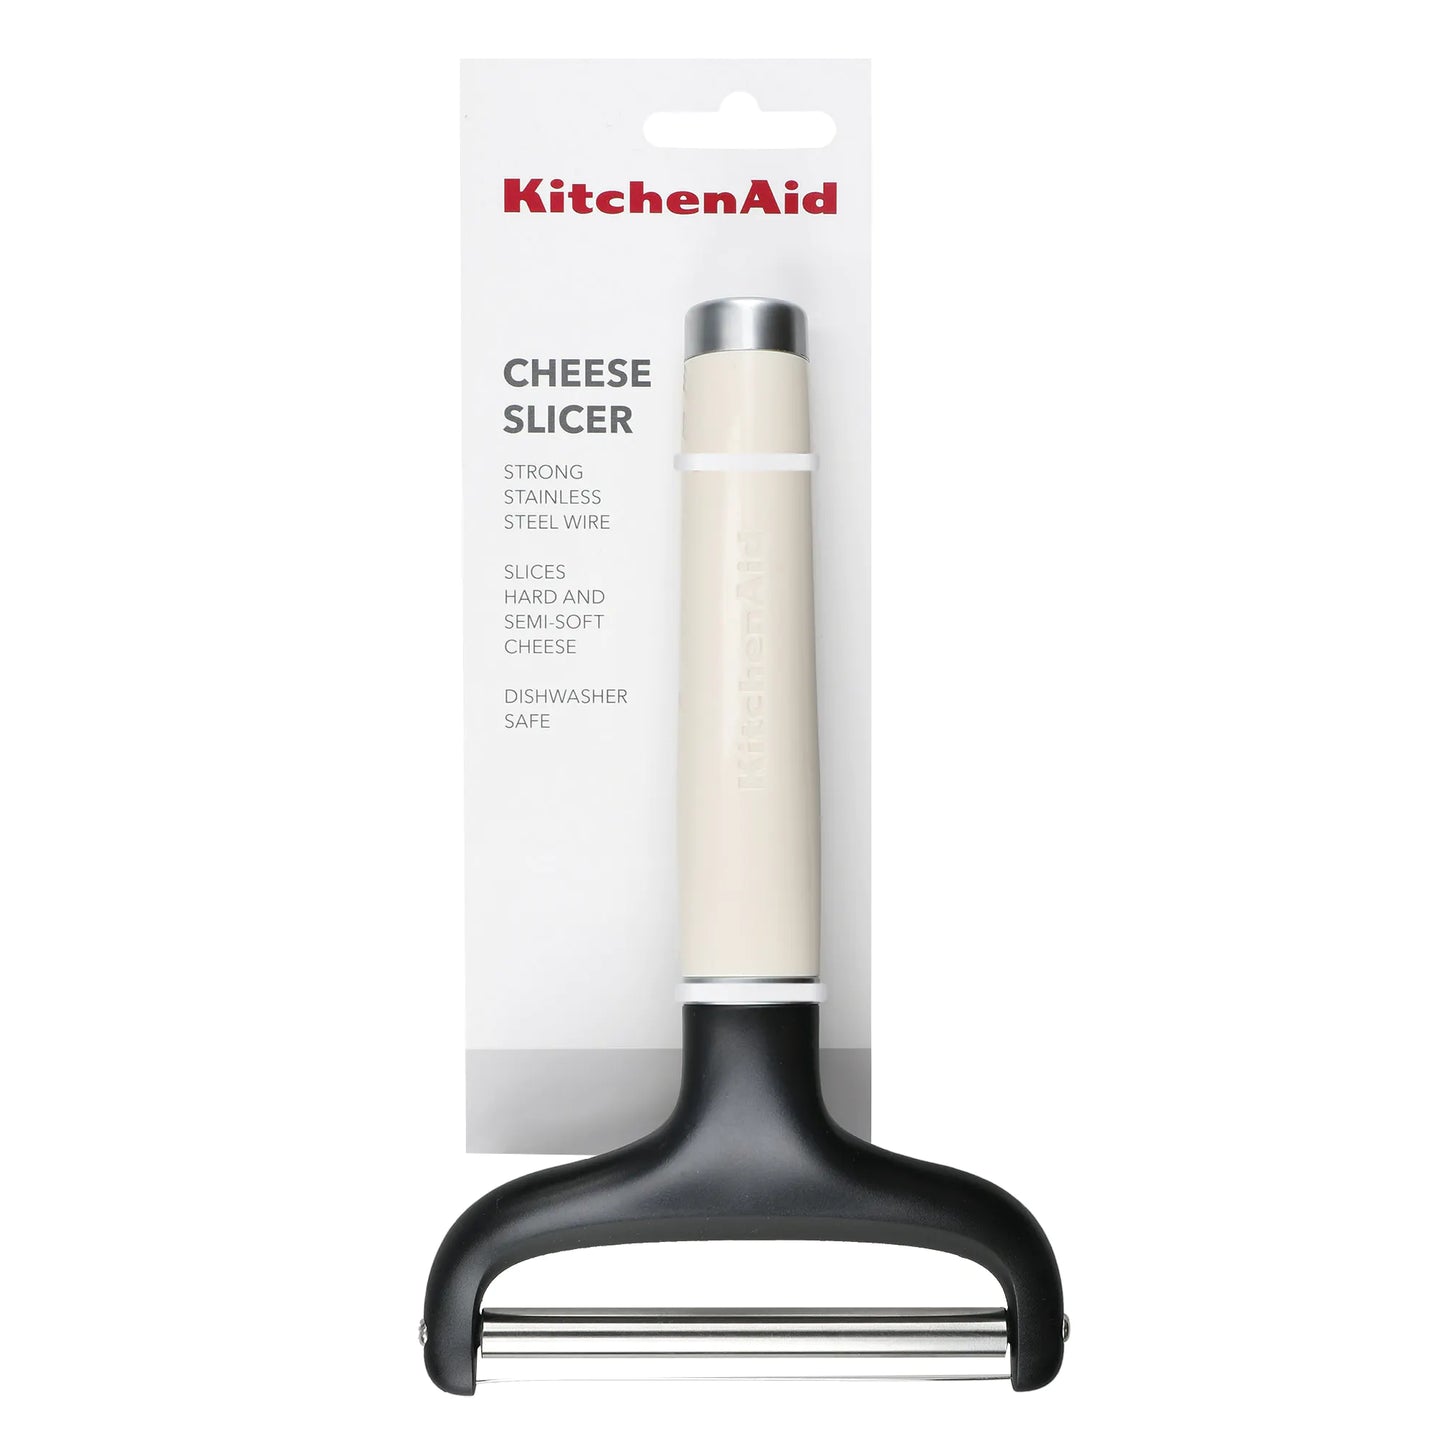 KitchenAid Cheese Slicer - Almond Cream